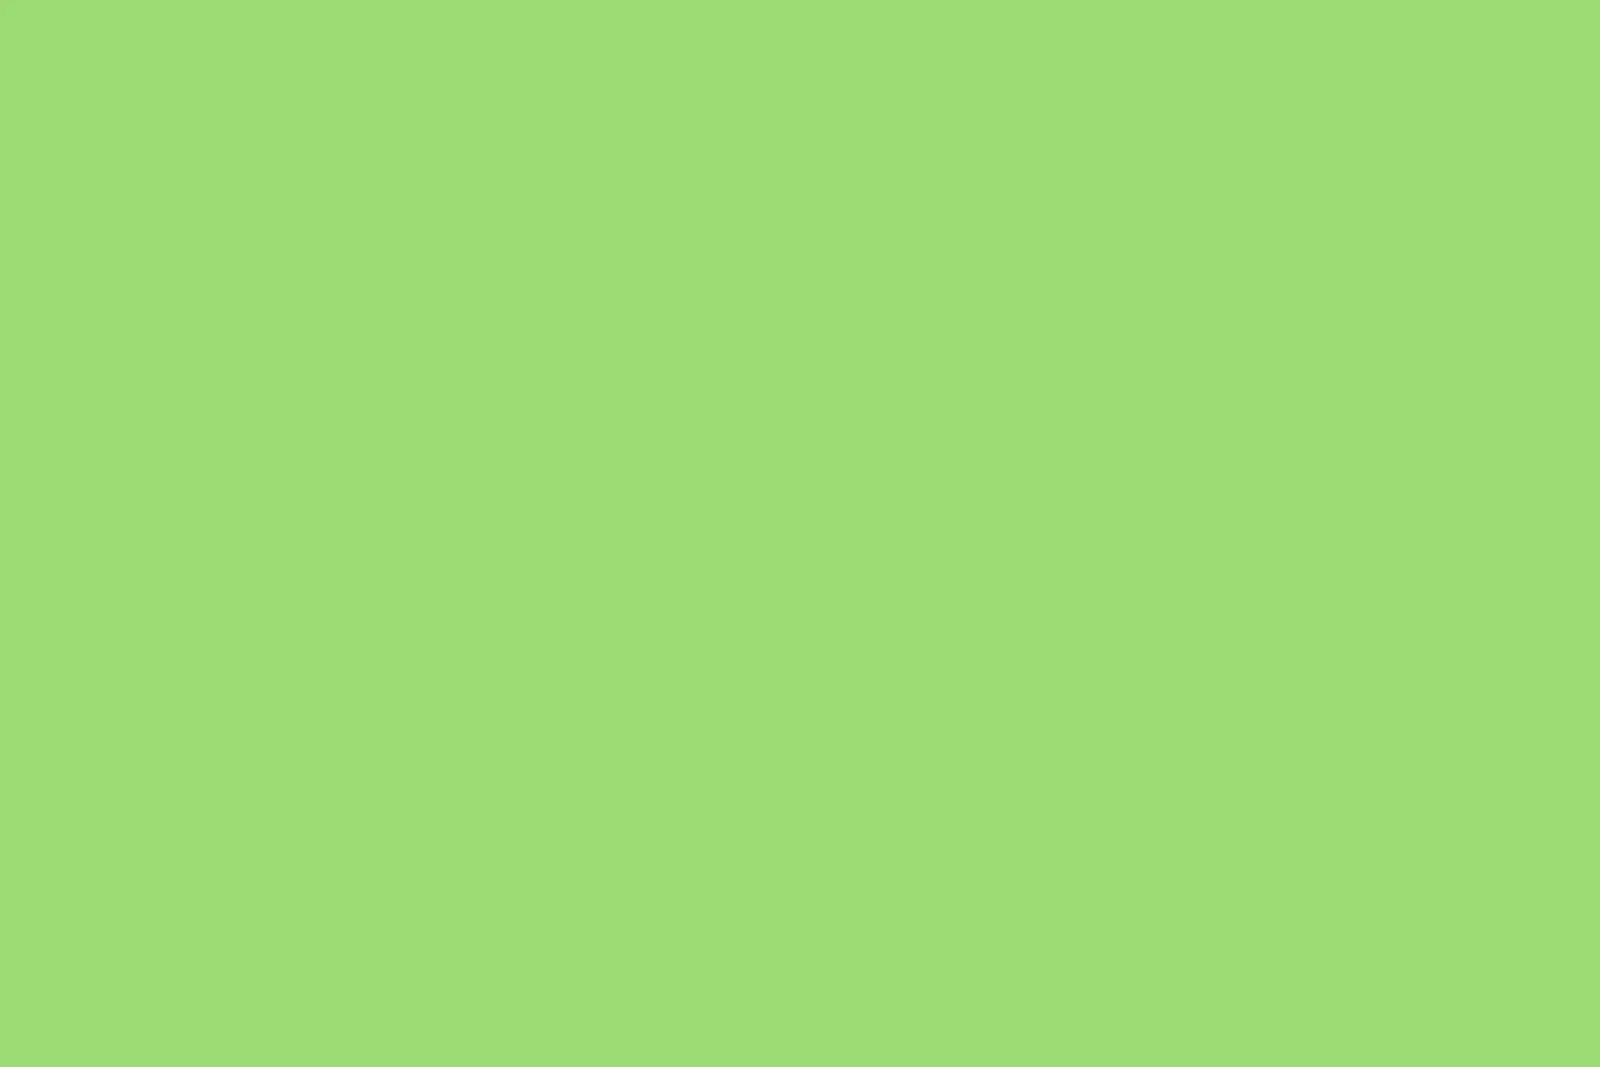 Тест проверки битых пикселей на телевизоре. Зеленый экран хромакей. Грин скрин чистый. Грин скрин хромакей. Зеленый цвет однотонный.